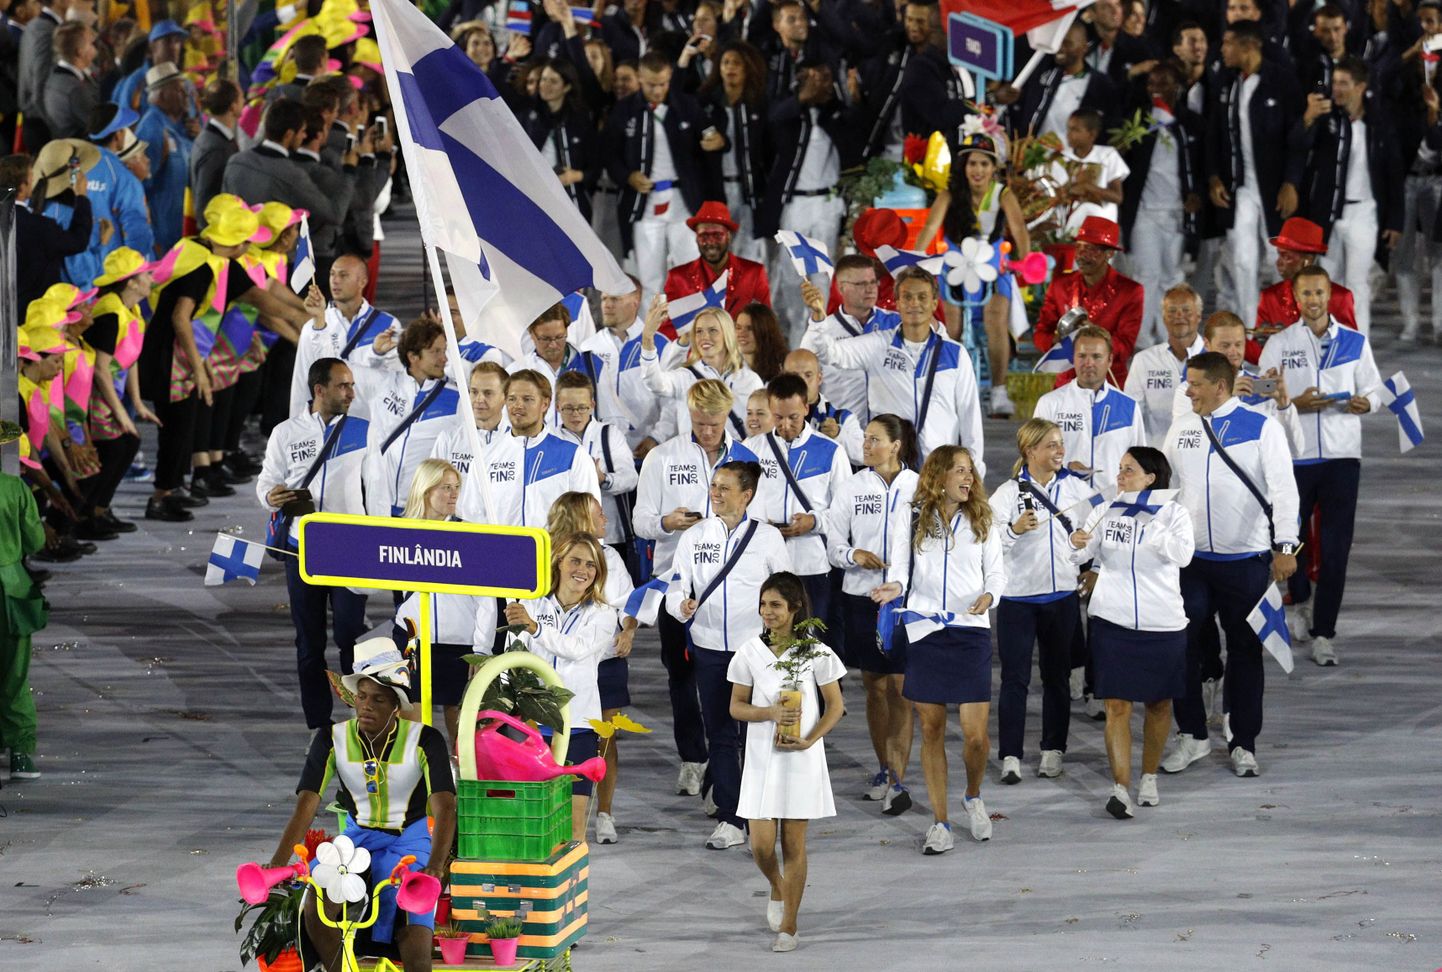 Soome olümpiakoondis Rio avatseremoonial.